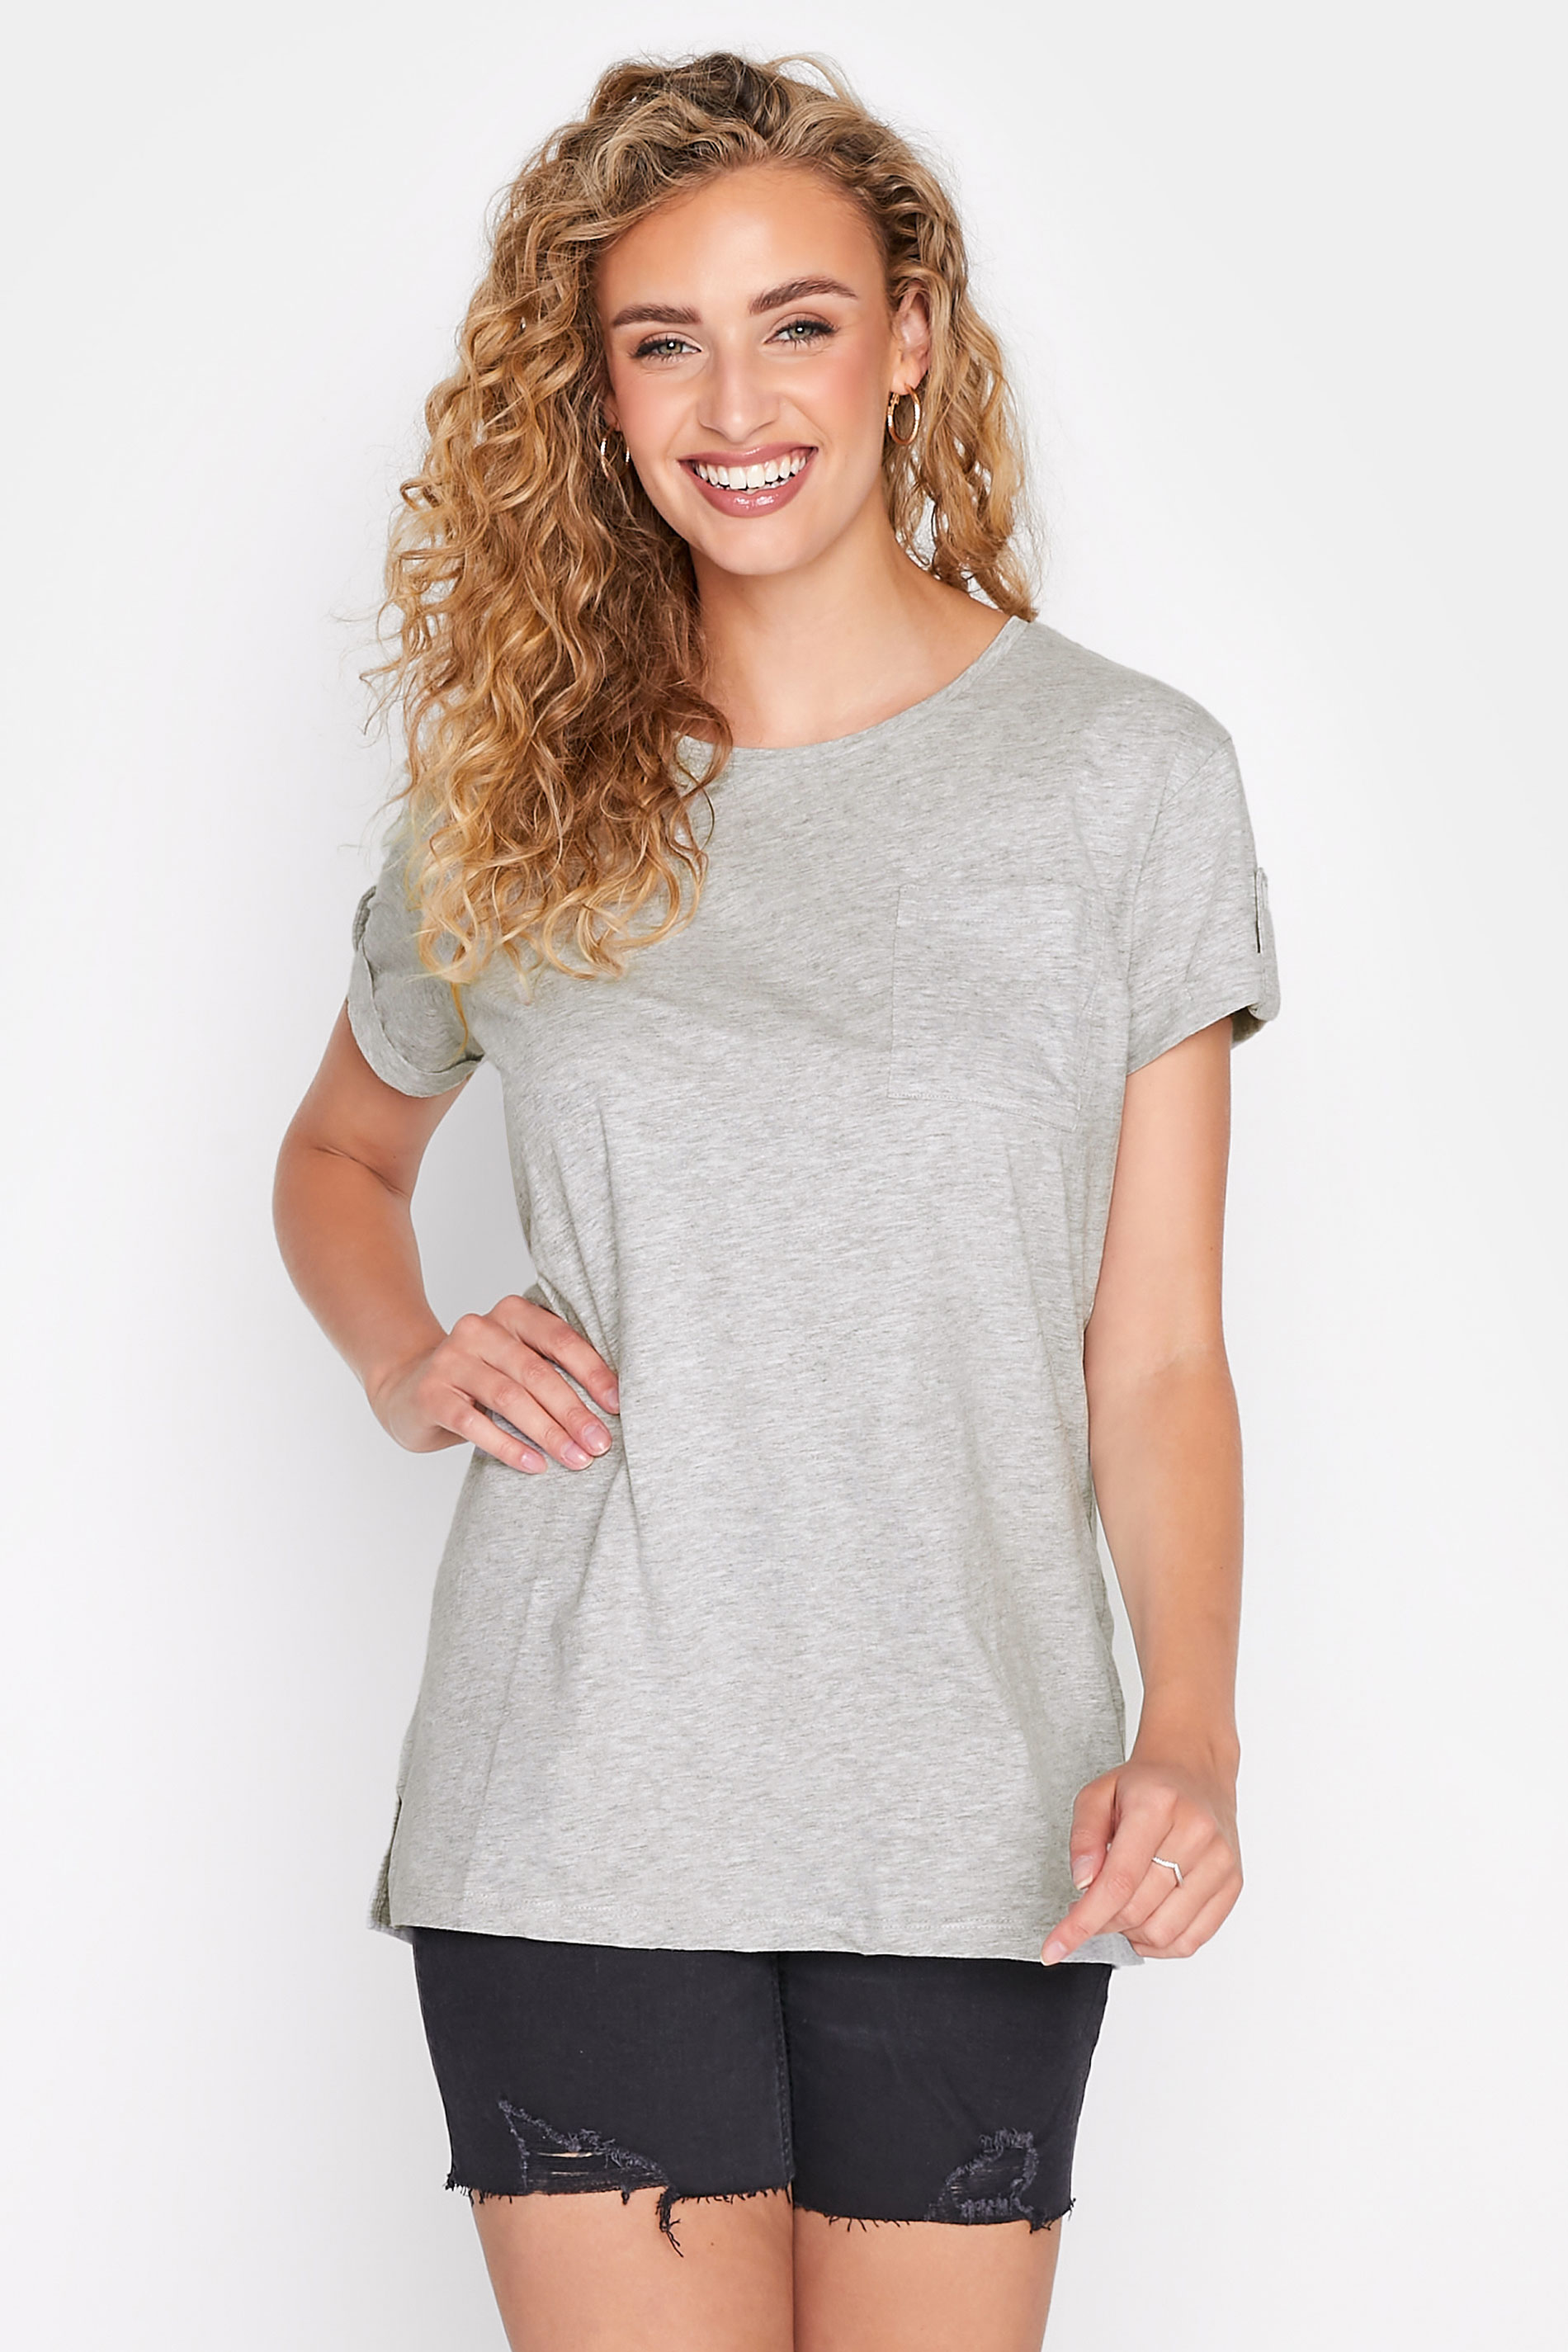 Tall Women's LTS Grey Short Sleeve Pocket T-Shirt | Long Tall Sally 1